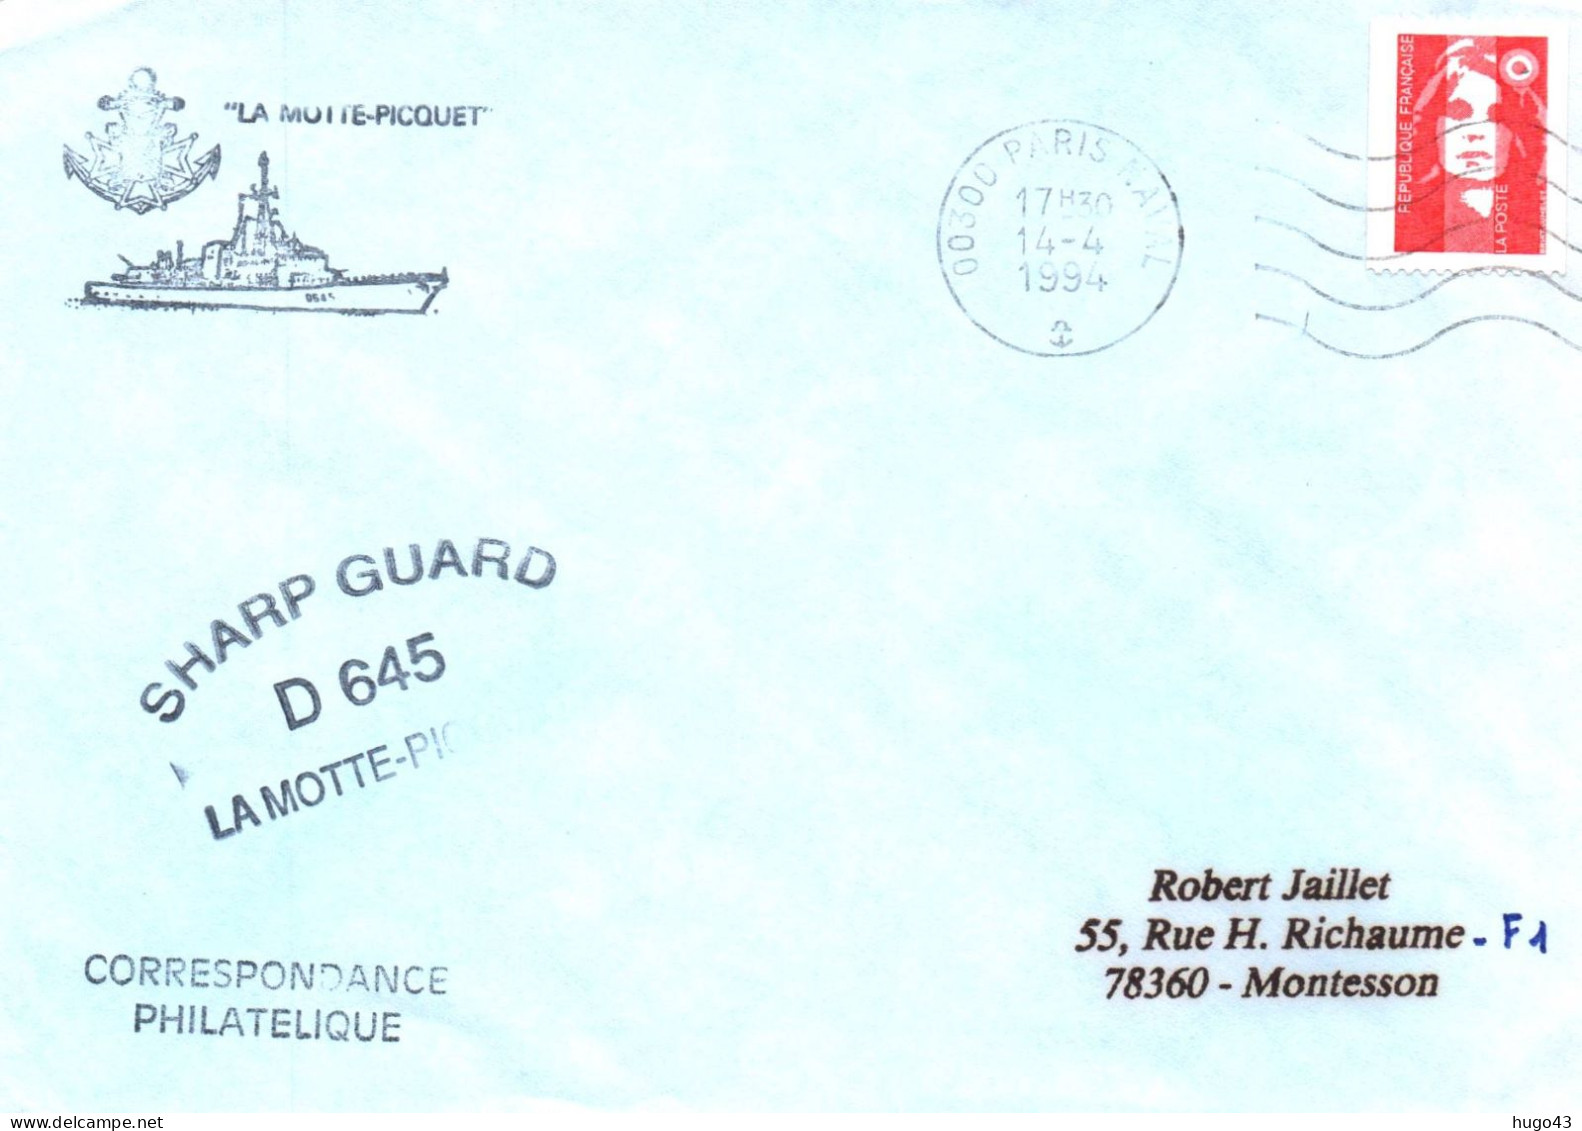 ENVELOPPE AVEC CACHET FREGATE FASM LA MOTTE PICQUET - SHARP GUARD D 645 - PARIS NAVAL LE 14/04/1994 - Poste Navale